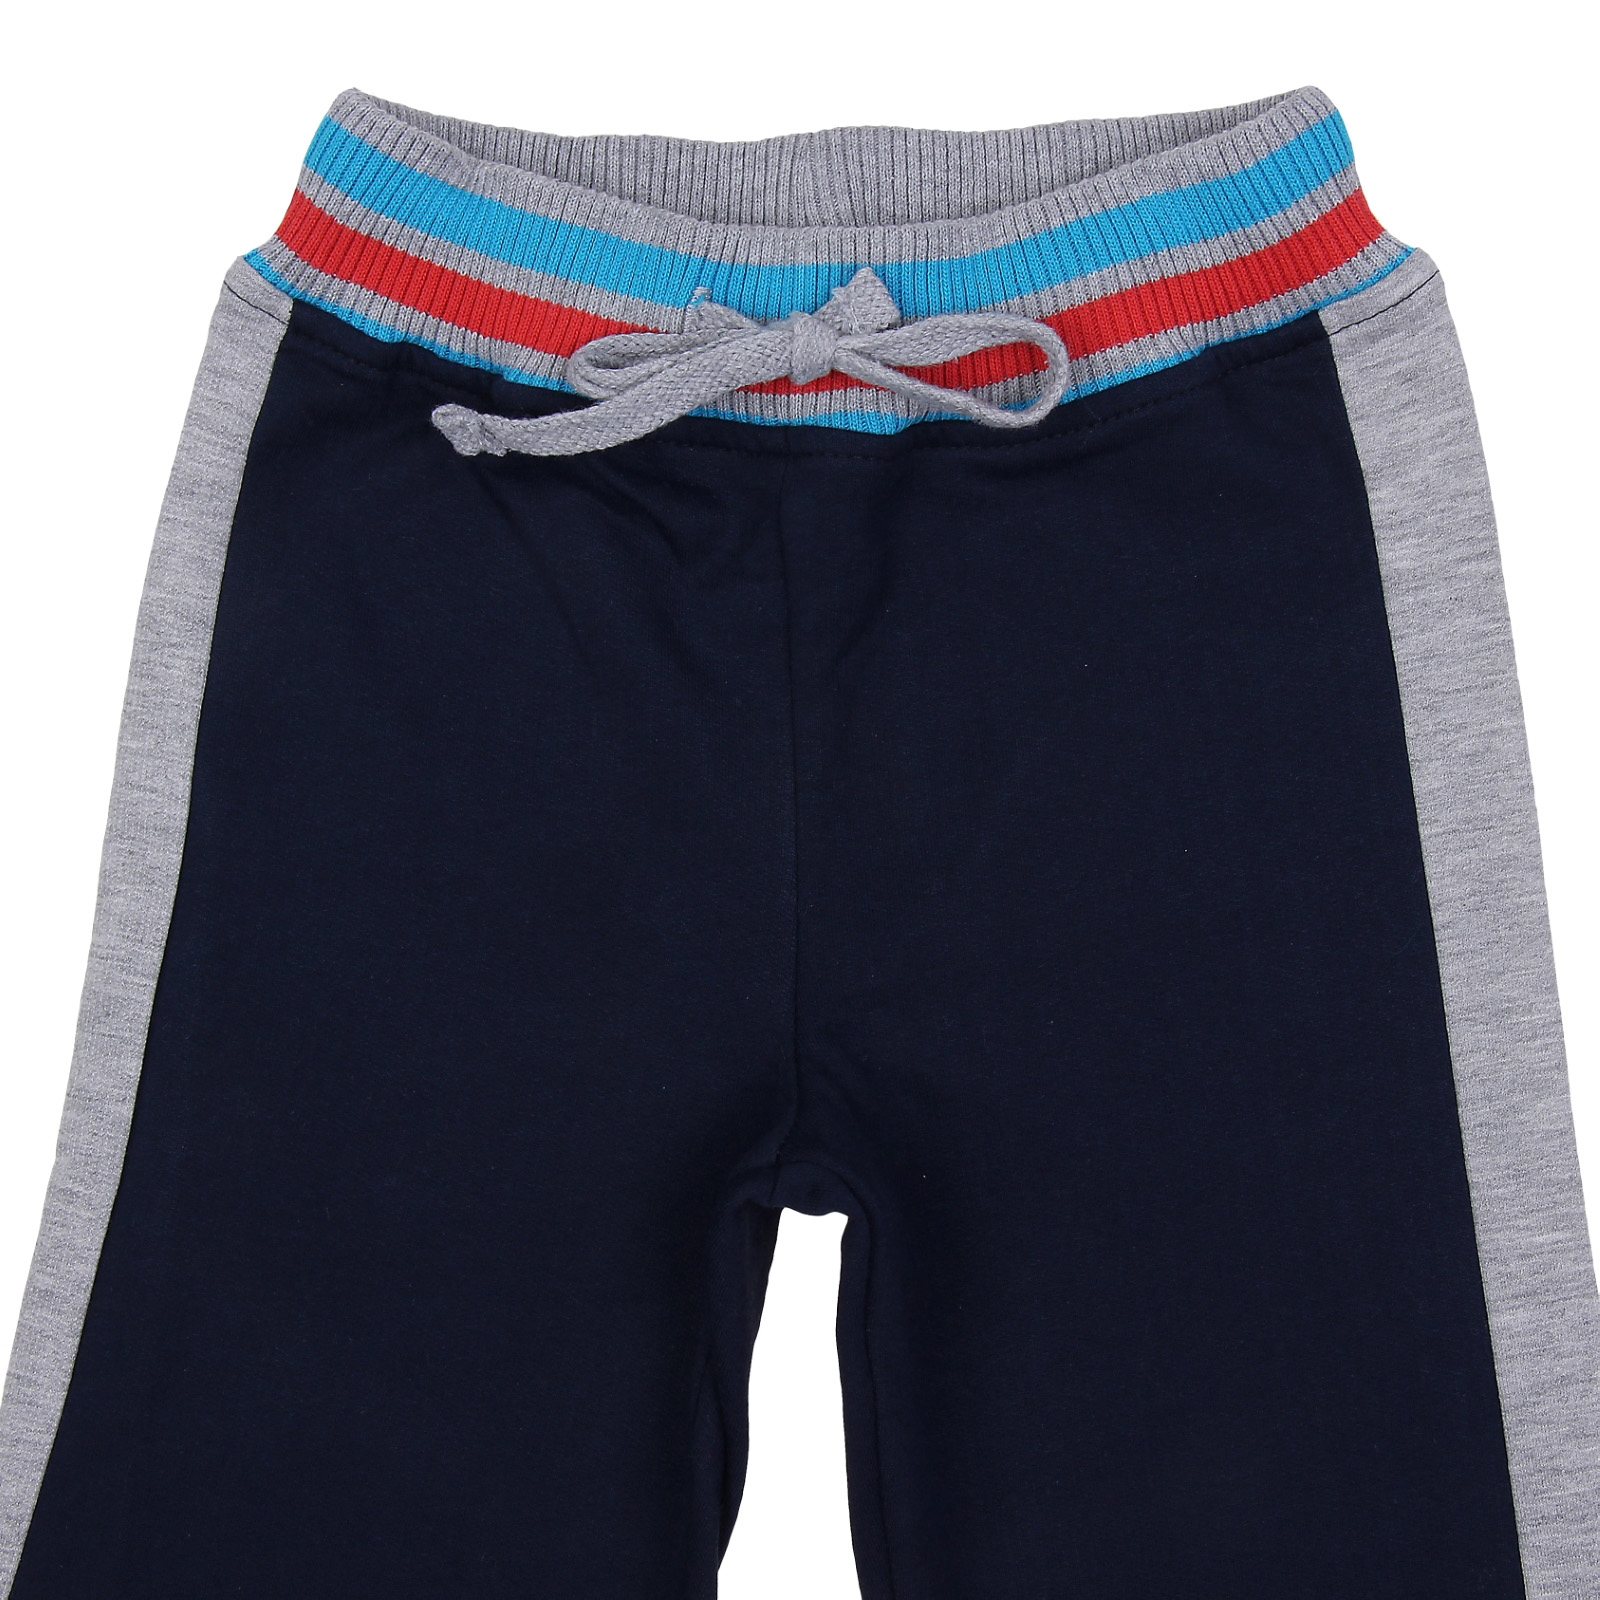 Спортивные штаны для мальчика, темно-синие, 98 см